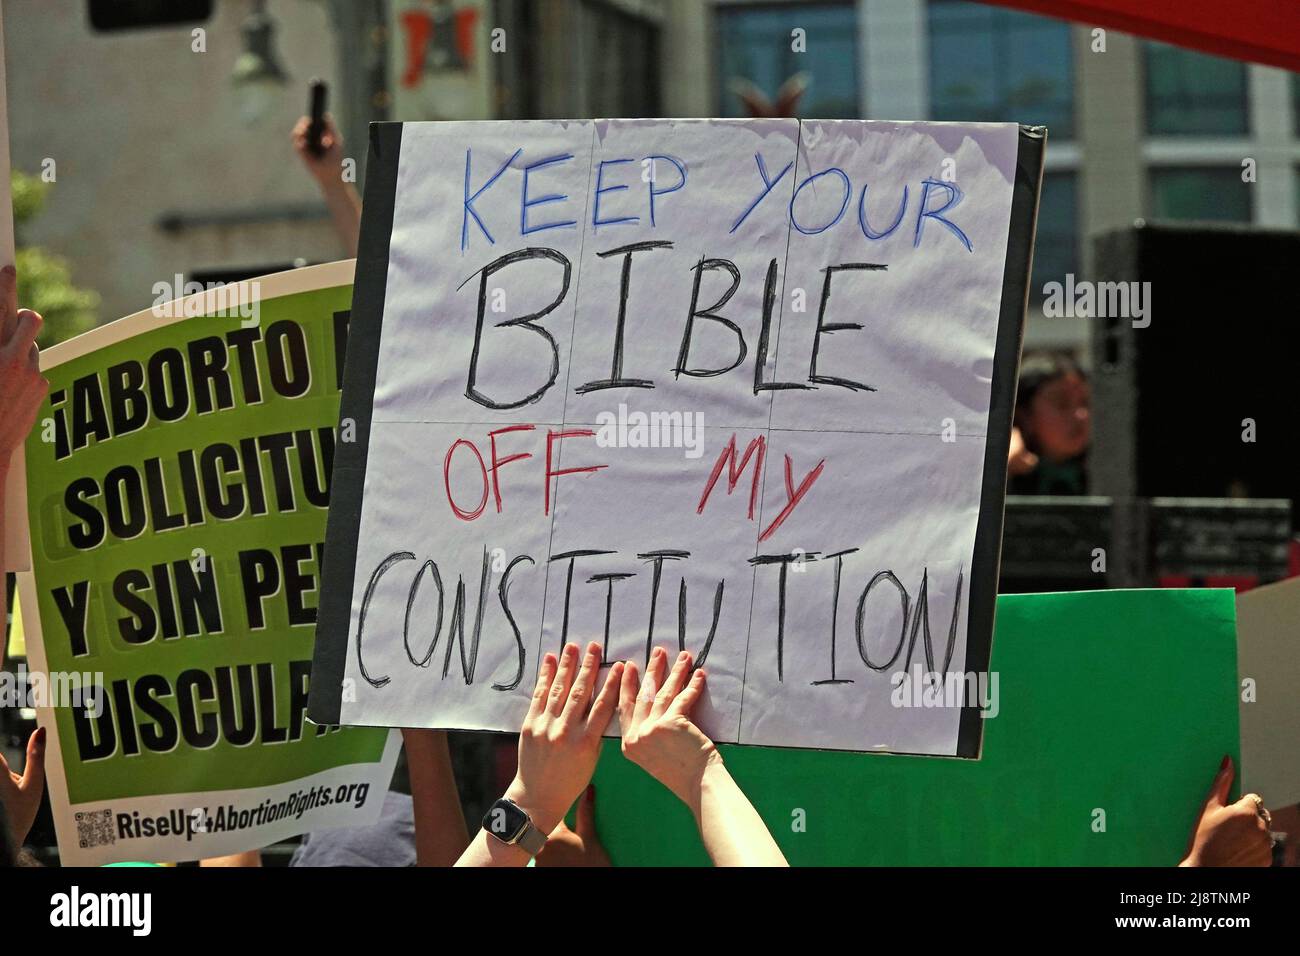 Los Angeles, CA / USA - 14 mai 2022 : un panneau indique "GARDEZ VOTRE BIBLE sur MA CONSTITUTION" lors d'une marche en faveur des droits des femmes en matière de reproduction. Banque D'Images